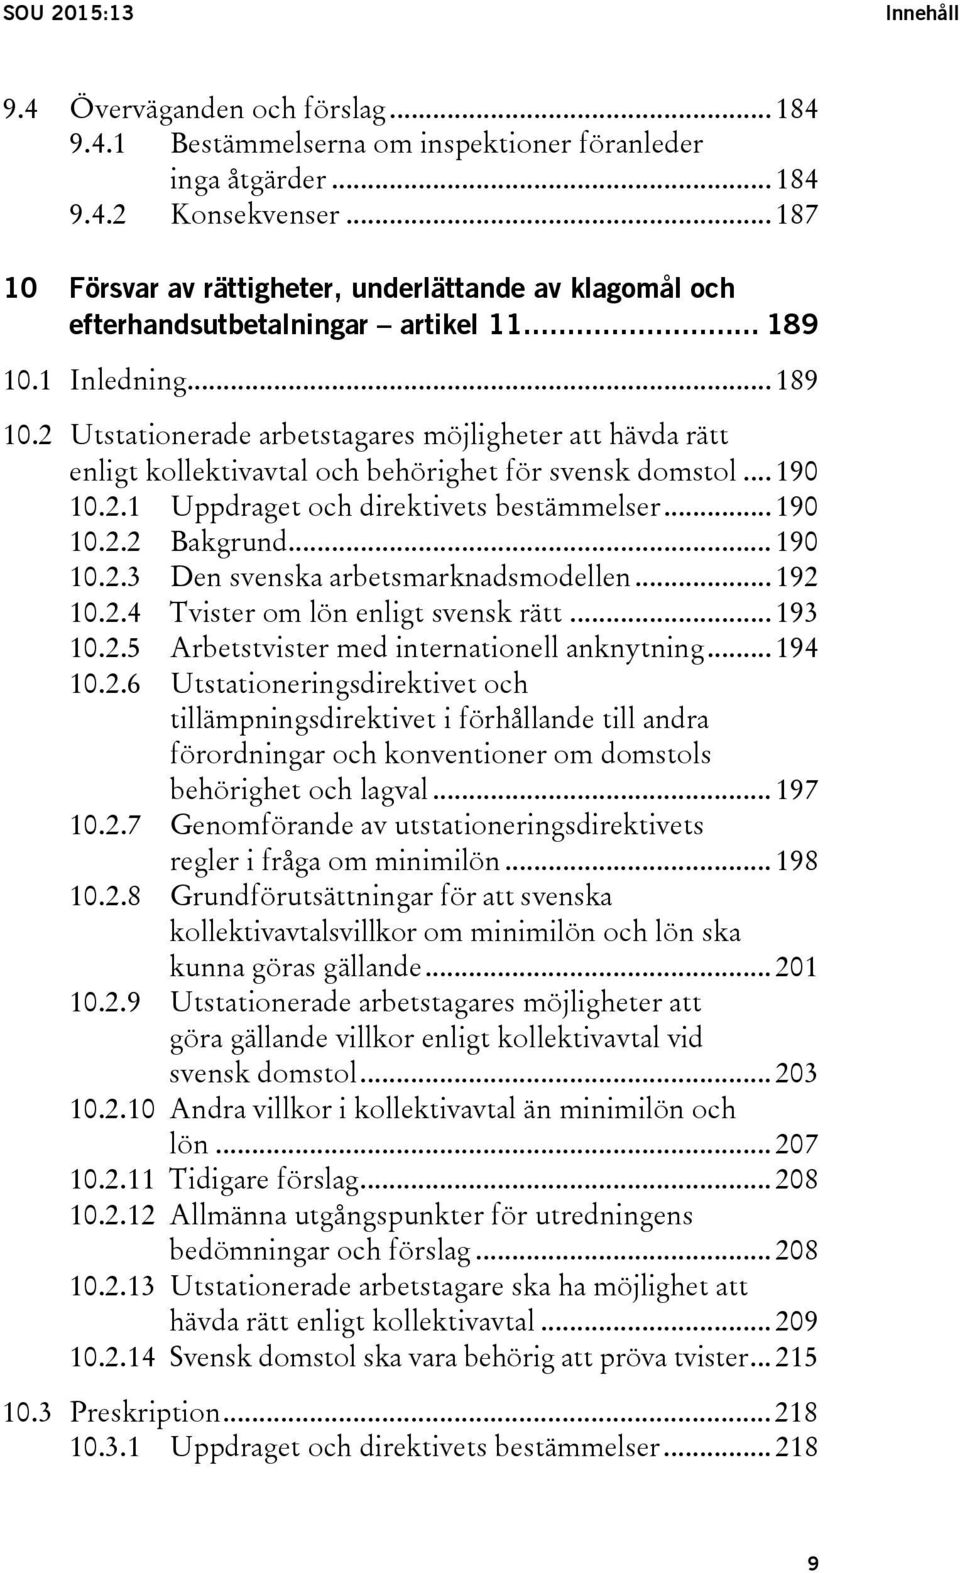 1 Inledning... 189 10.2 Utstationerade arbetstagares möjligheter att hävda rätt enligt kollektivavtal och behörighet för svensk domstol... 190 10.2.1 Uppdraget och direktivets bestämmelser... 190 10.2.2 Bakgrund.